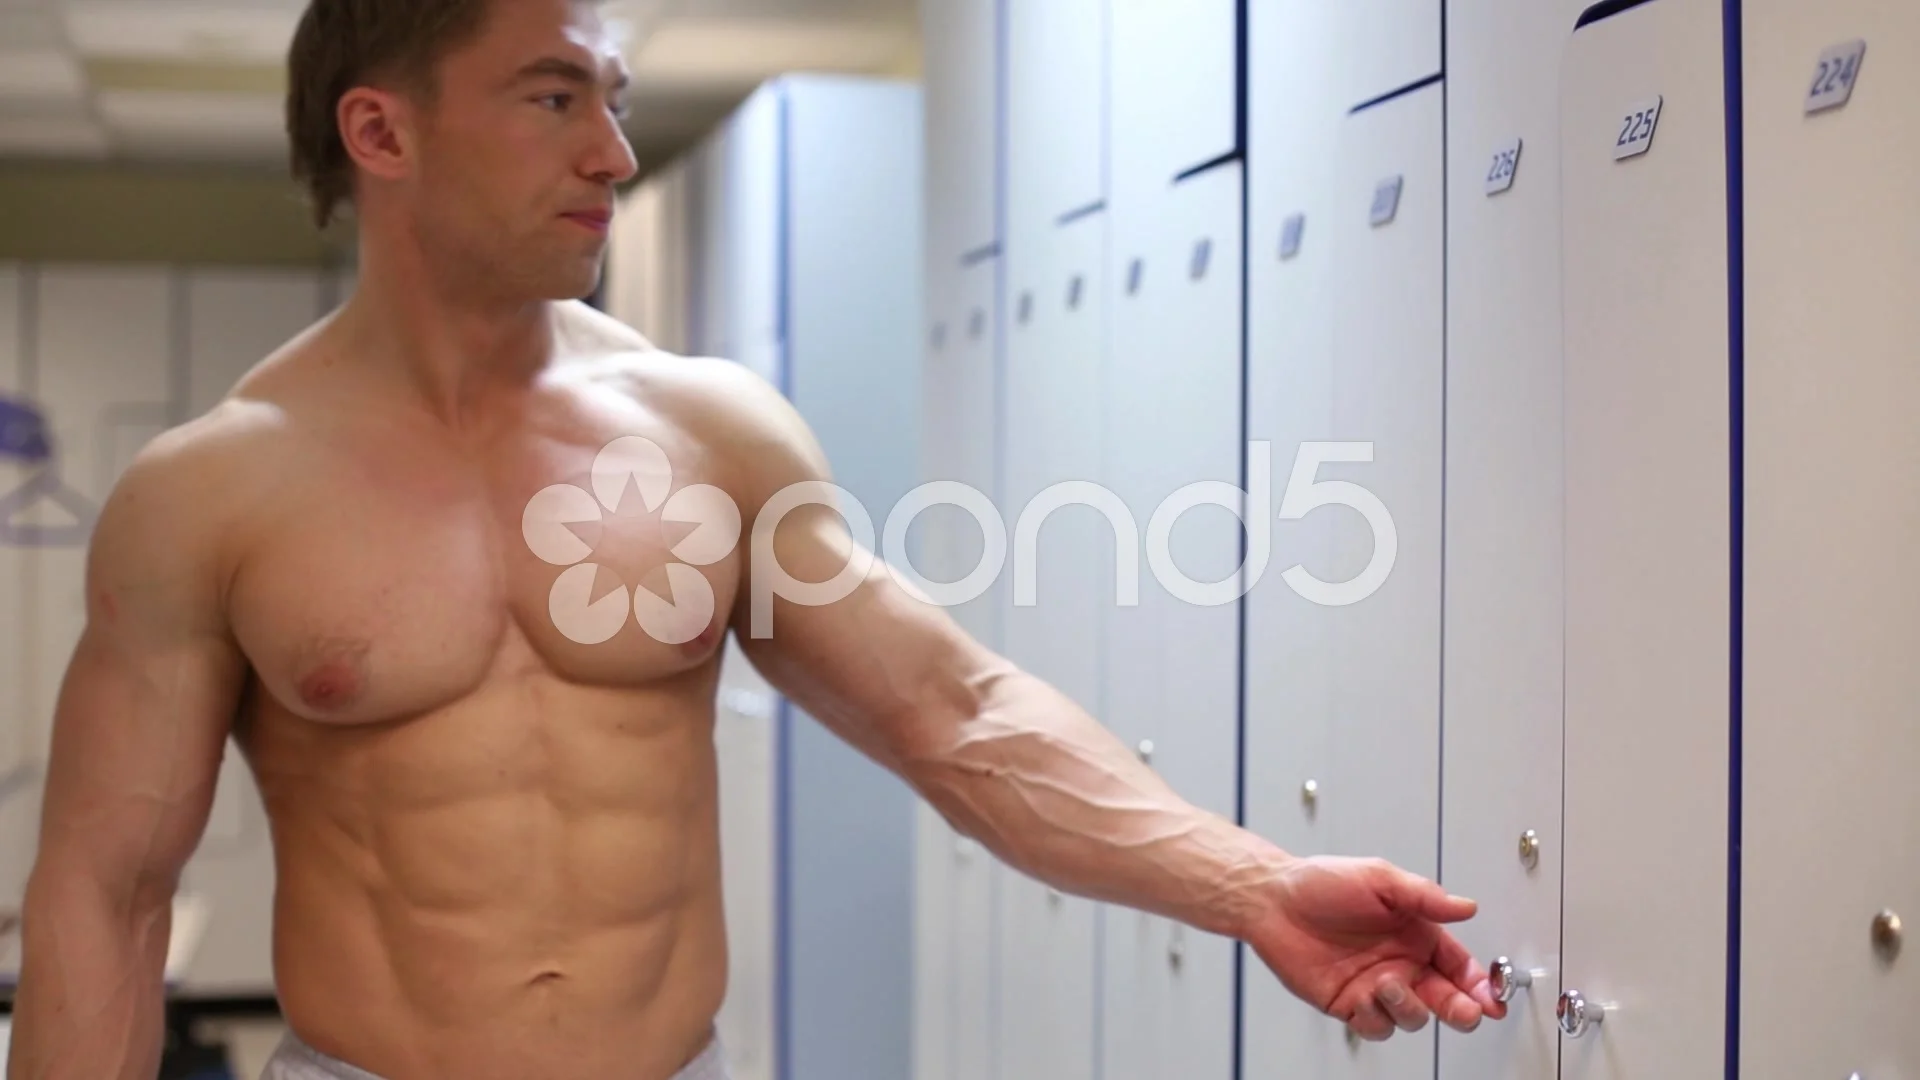 Bodybuilder opens door in locker room af... | Stock Video | Pond5